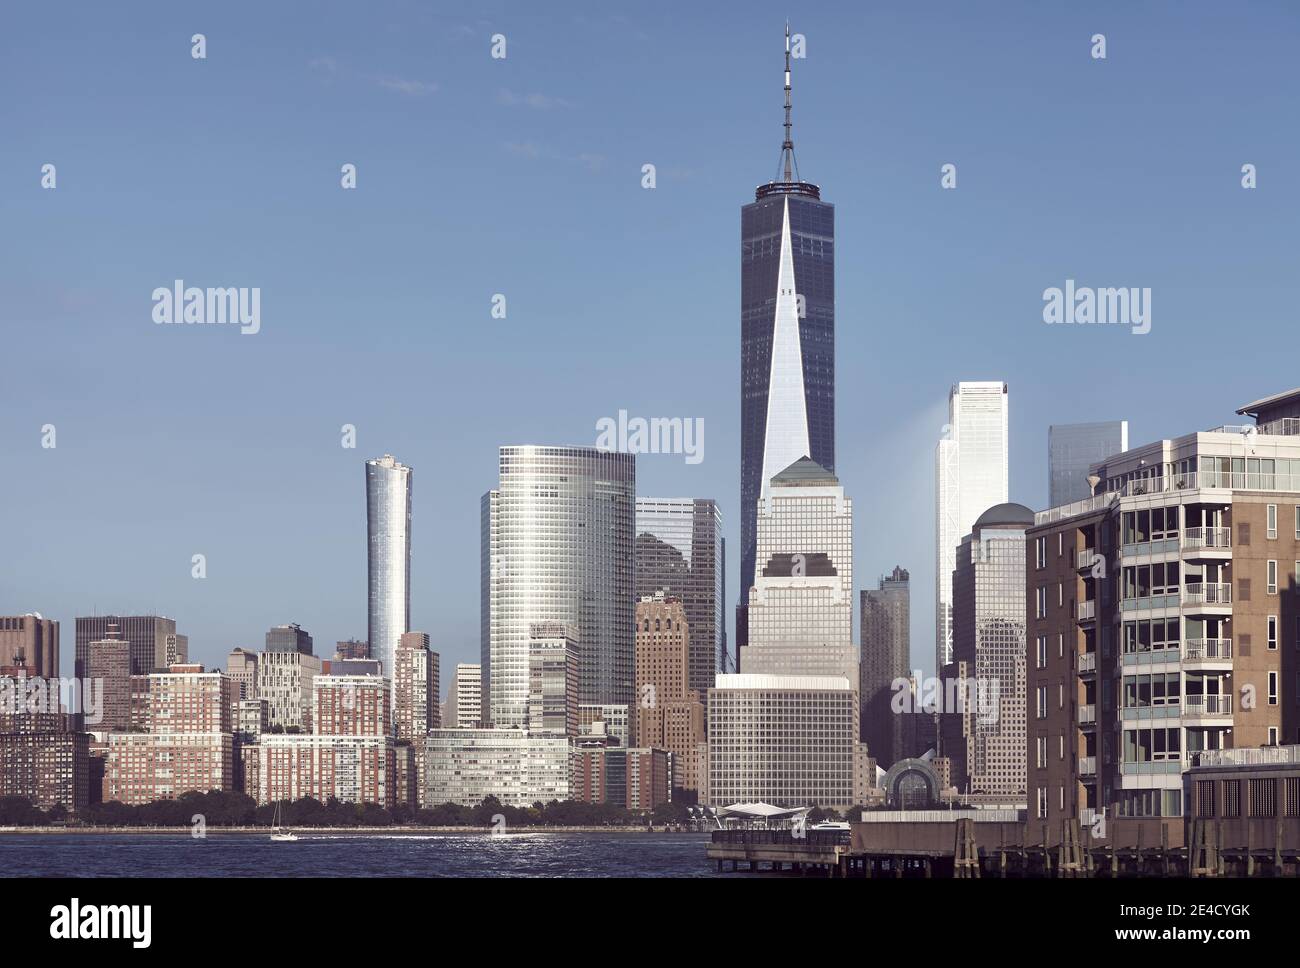 Skyline von Manhattan von Jersey City aus gesehen, farbiges Bild, USA. Stockfoto